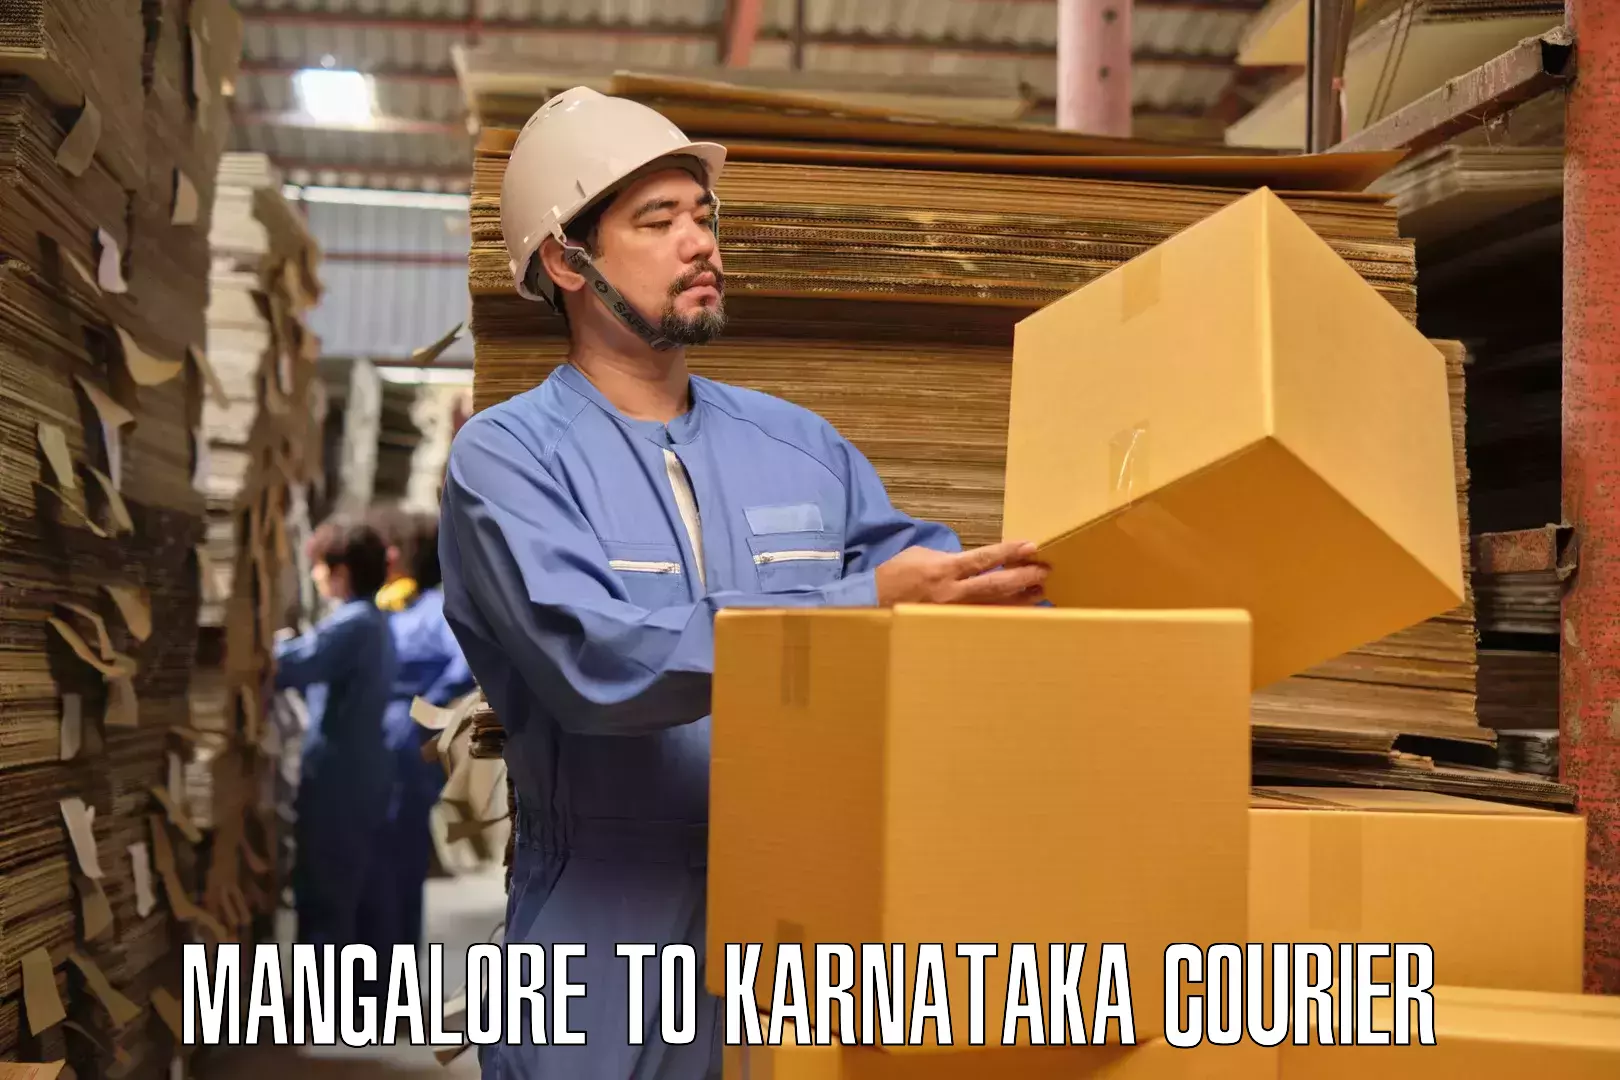 Professional moving company Mangalore to Karnataka